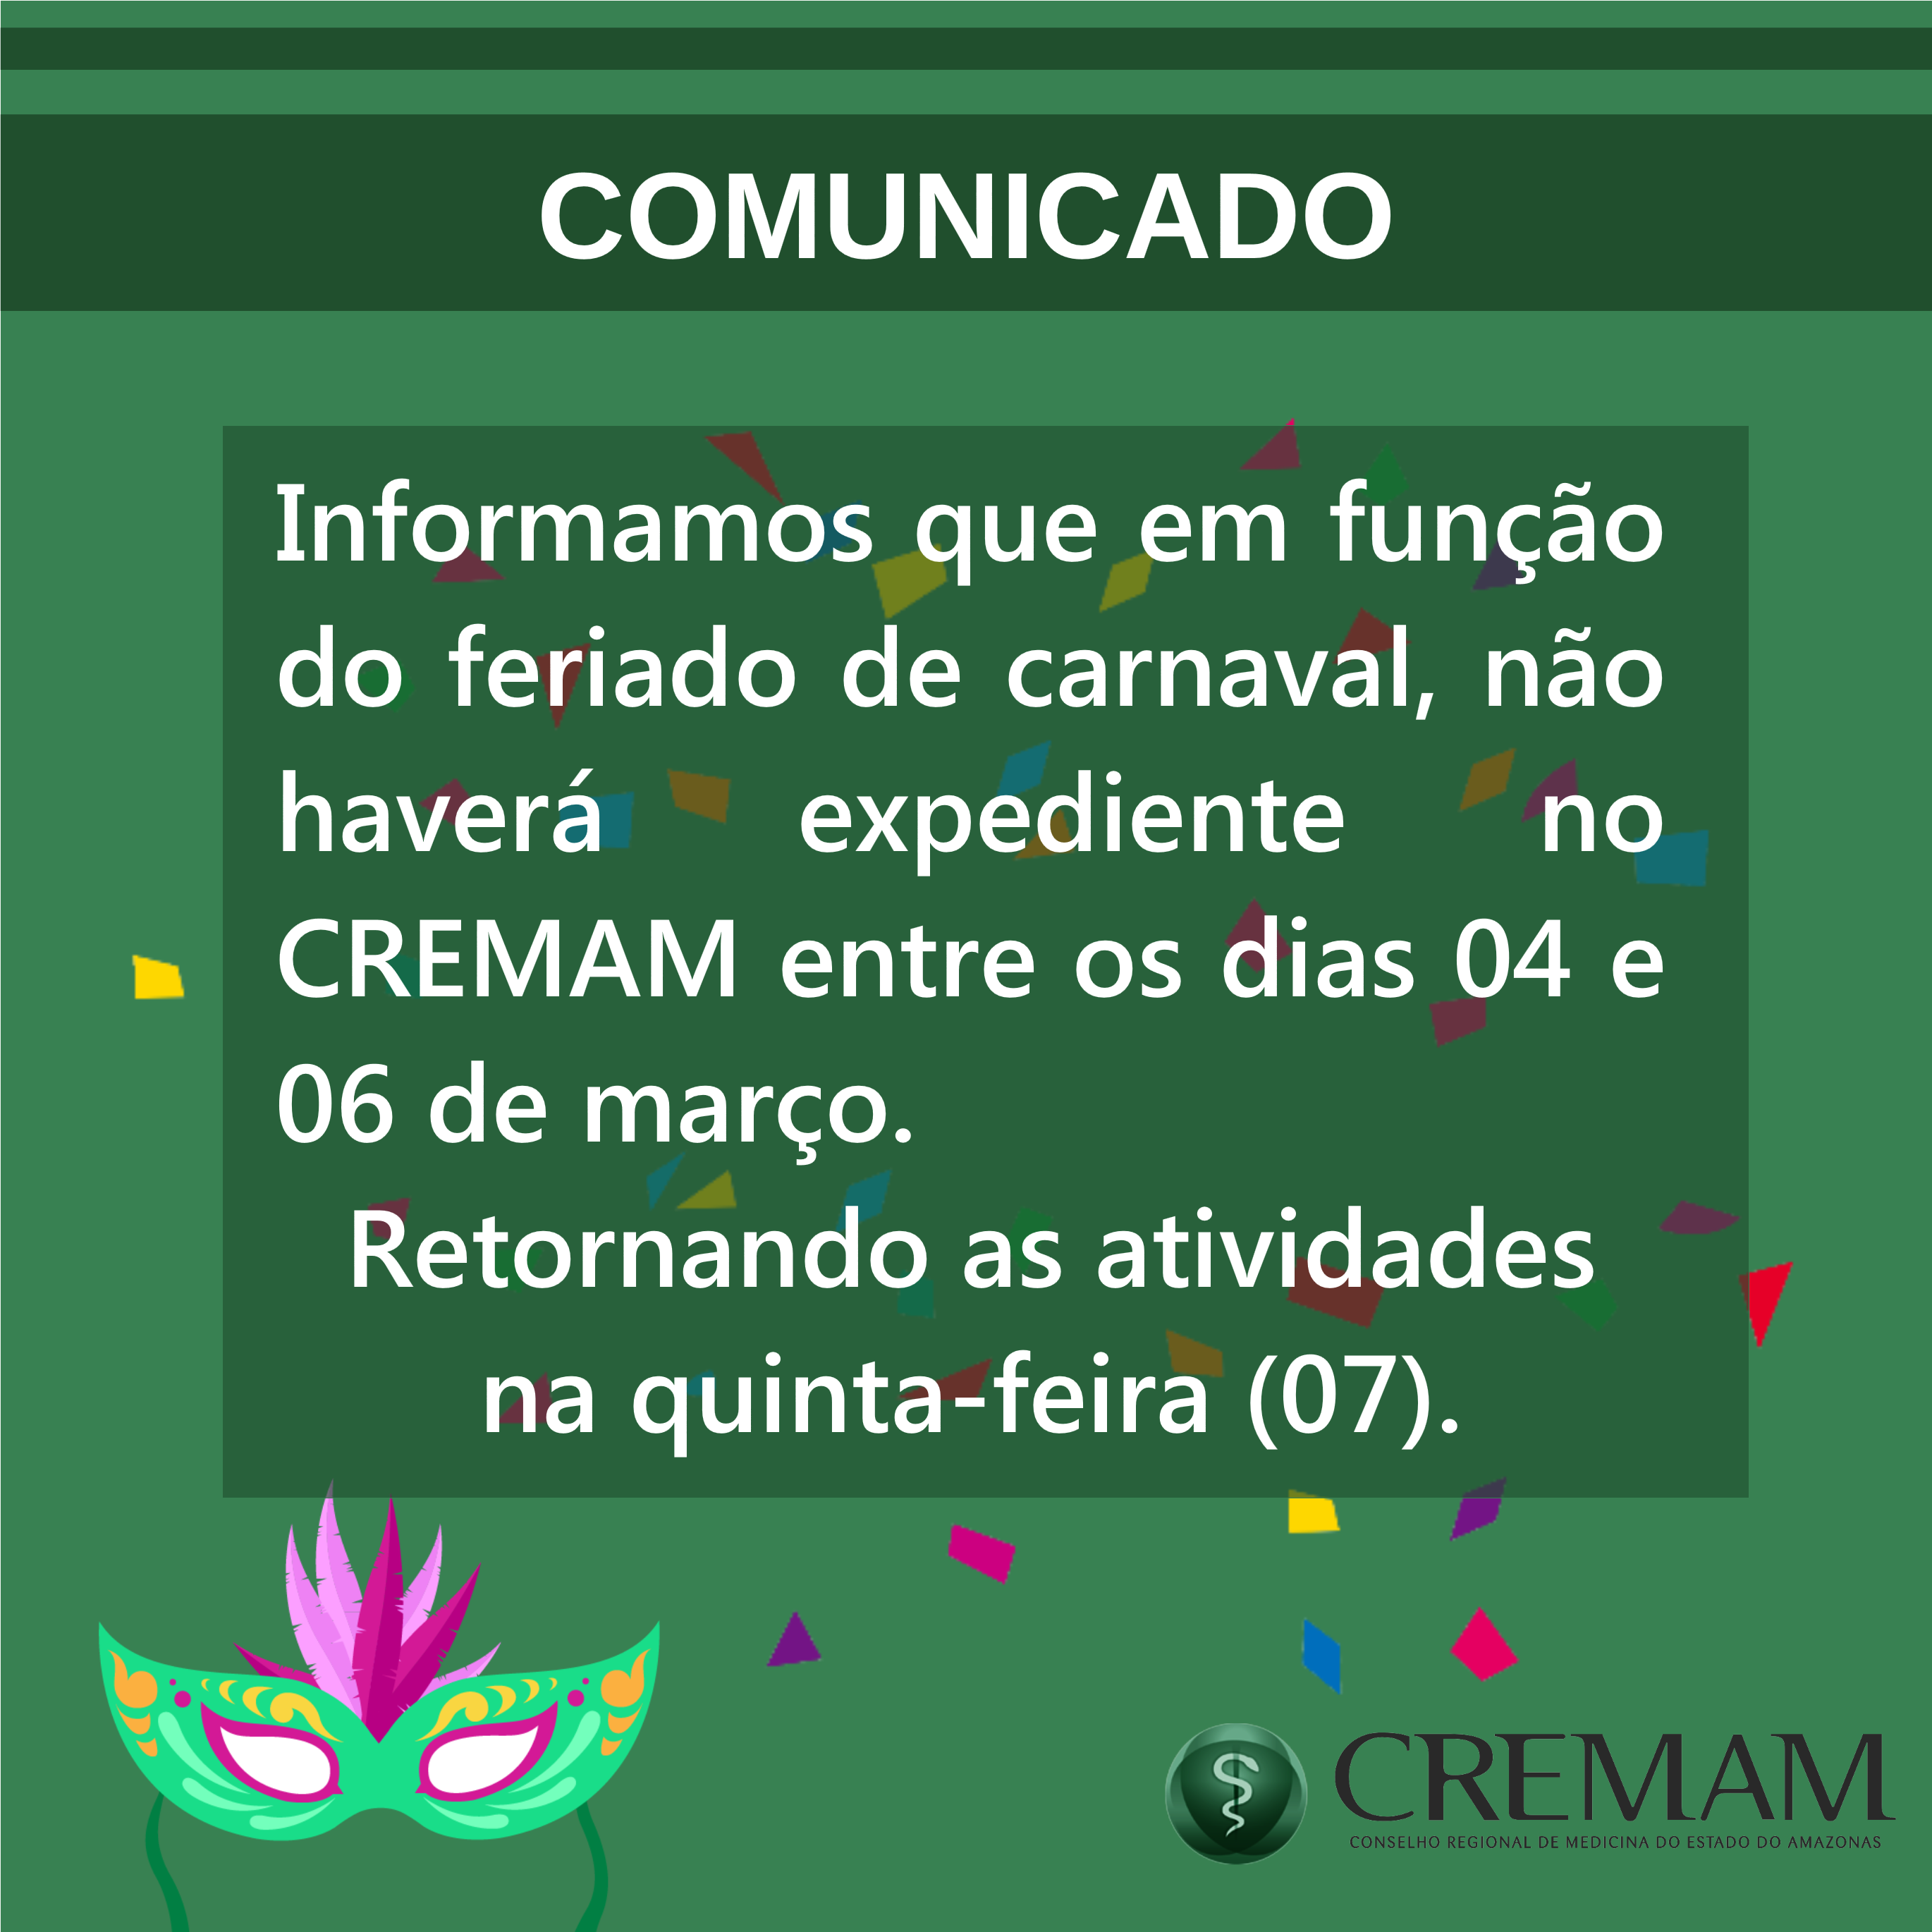 Expediente do CREMAM, Carnaval 2019